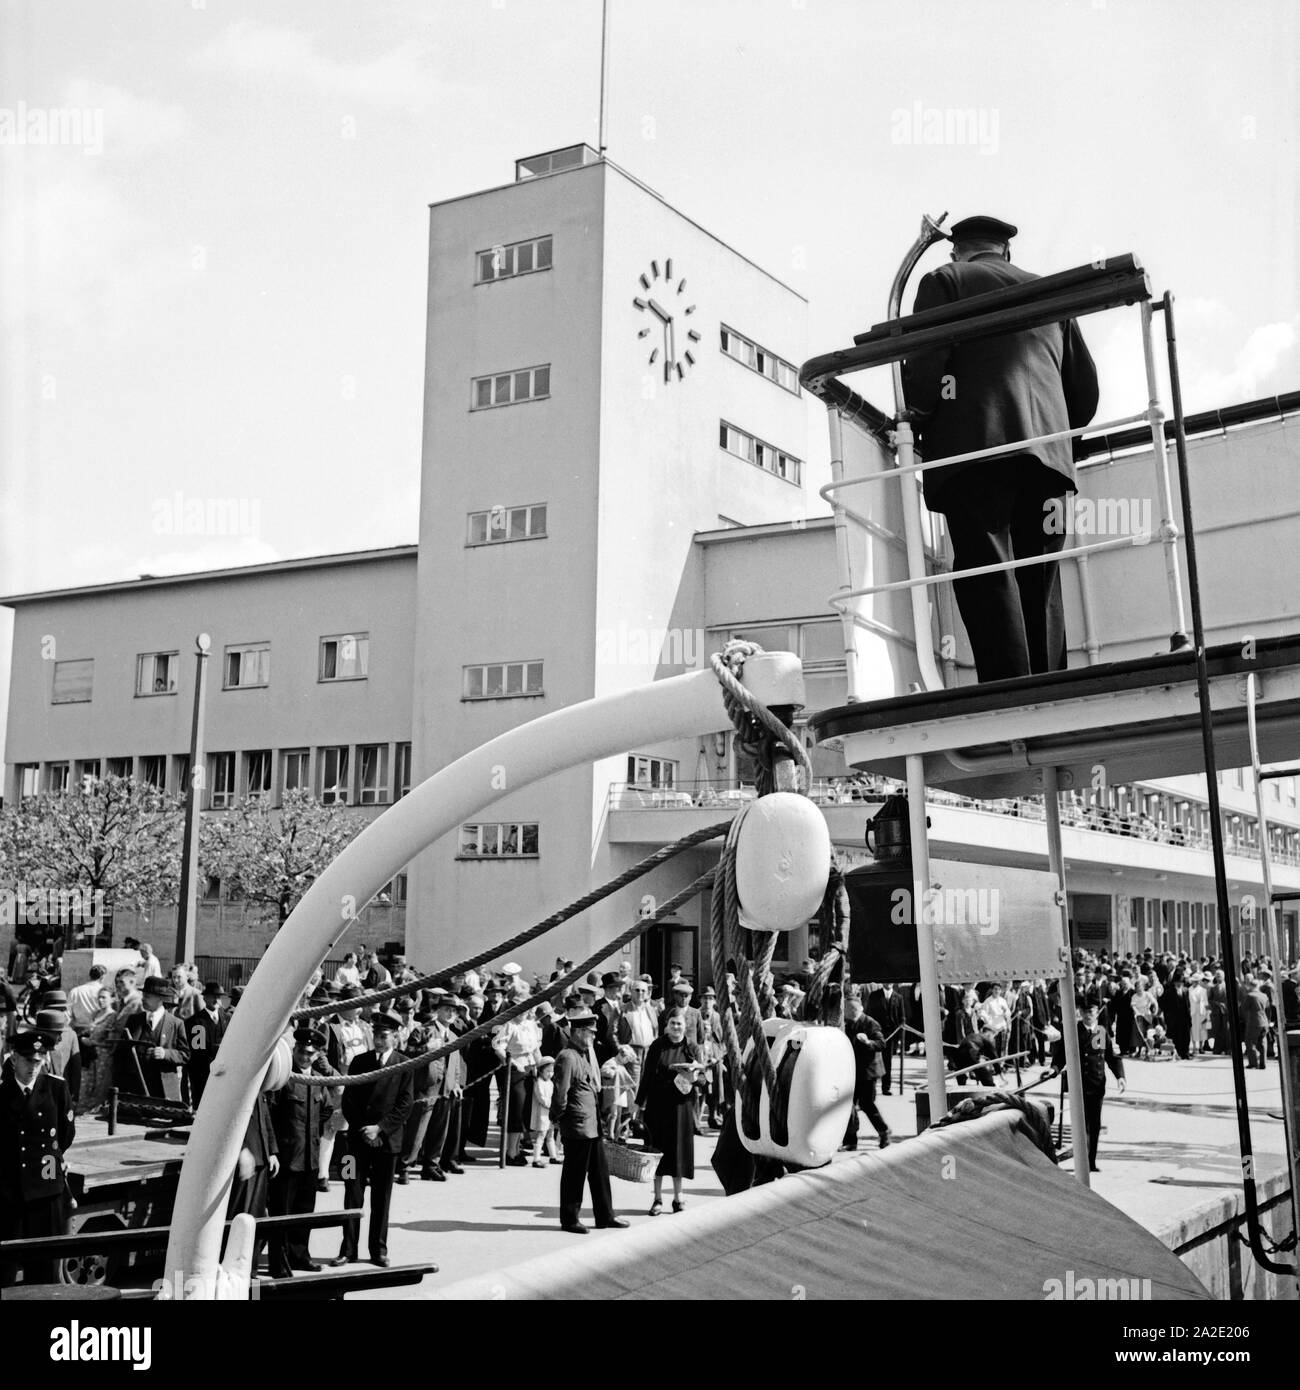 Der Hafenbahnhof in Friedrichshafen, Deutschland 1930er Jahre. Hafenbahnhof station at Friedrichshafen, Germany 1930s. Stock Photo